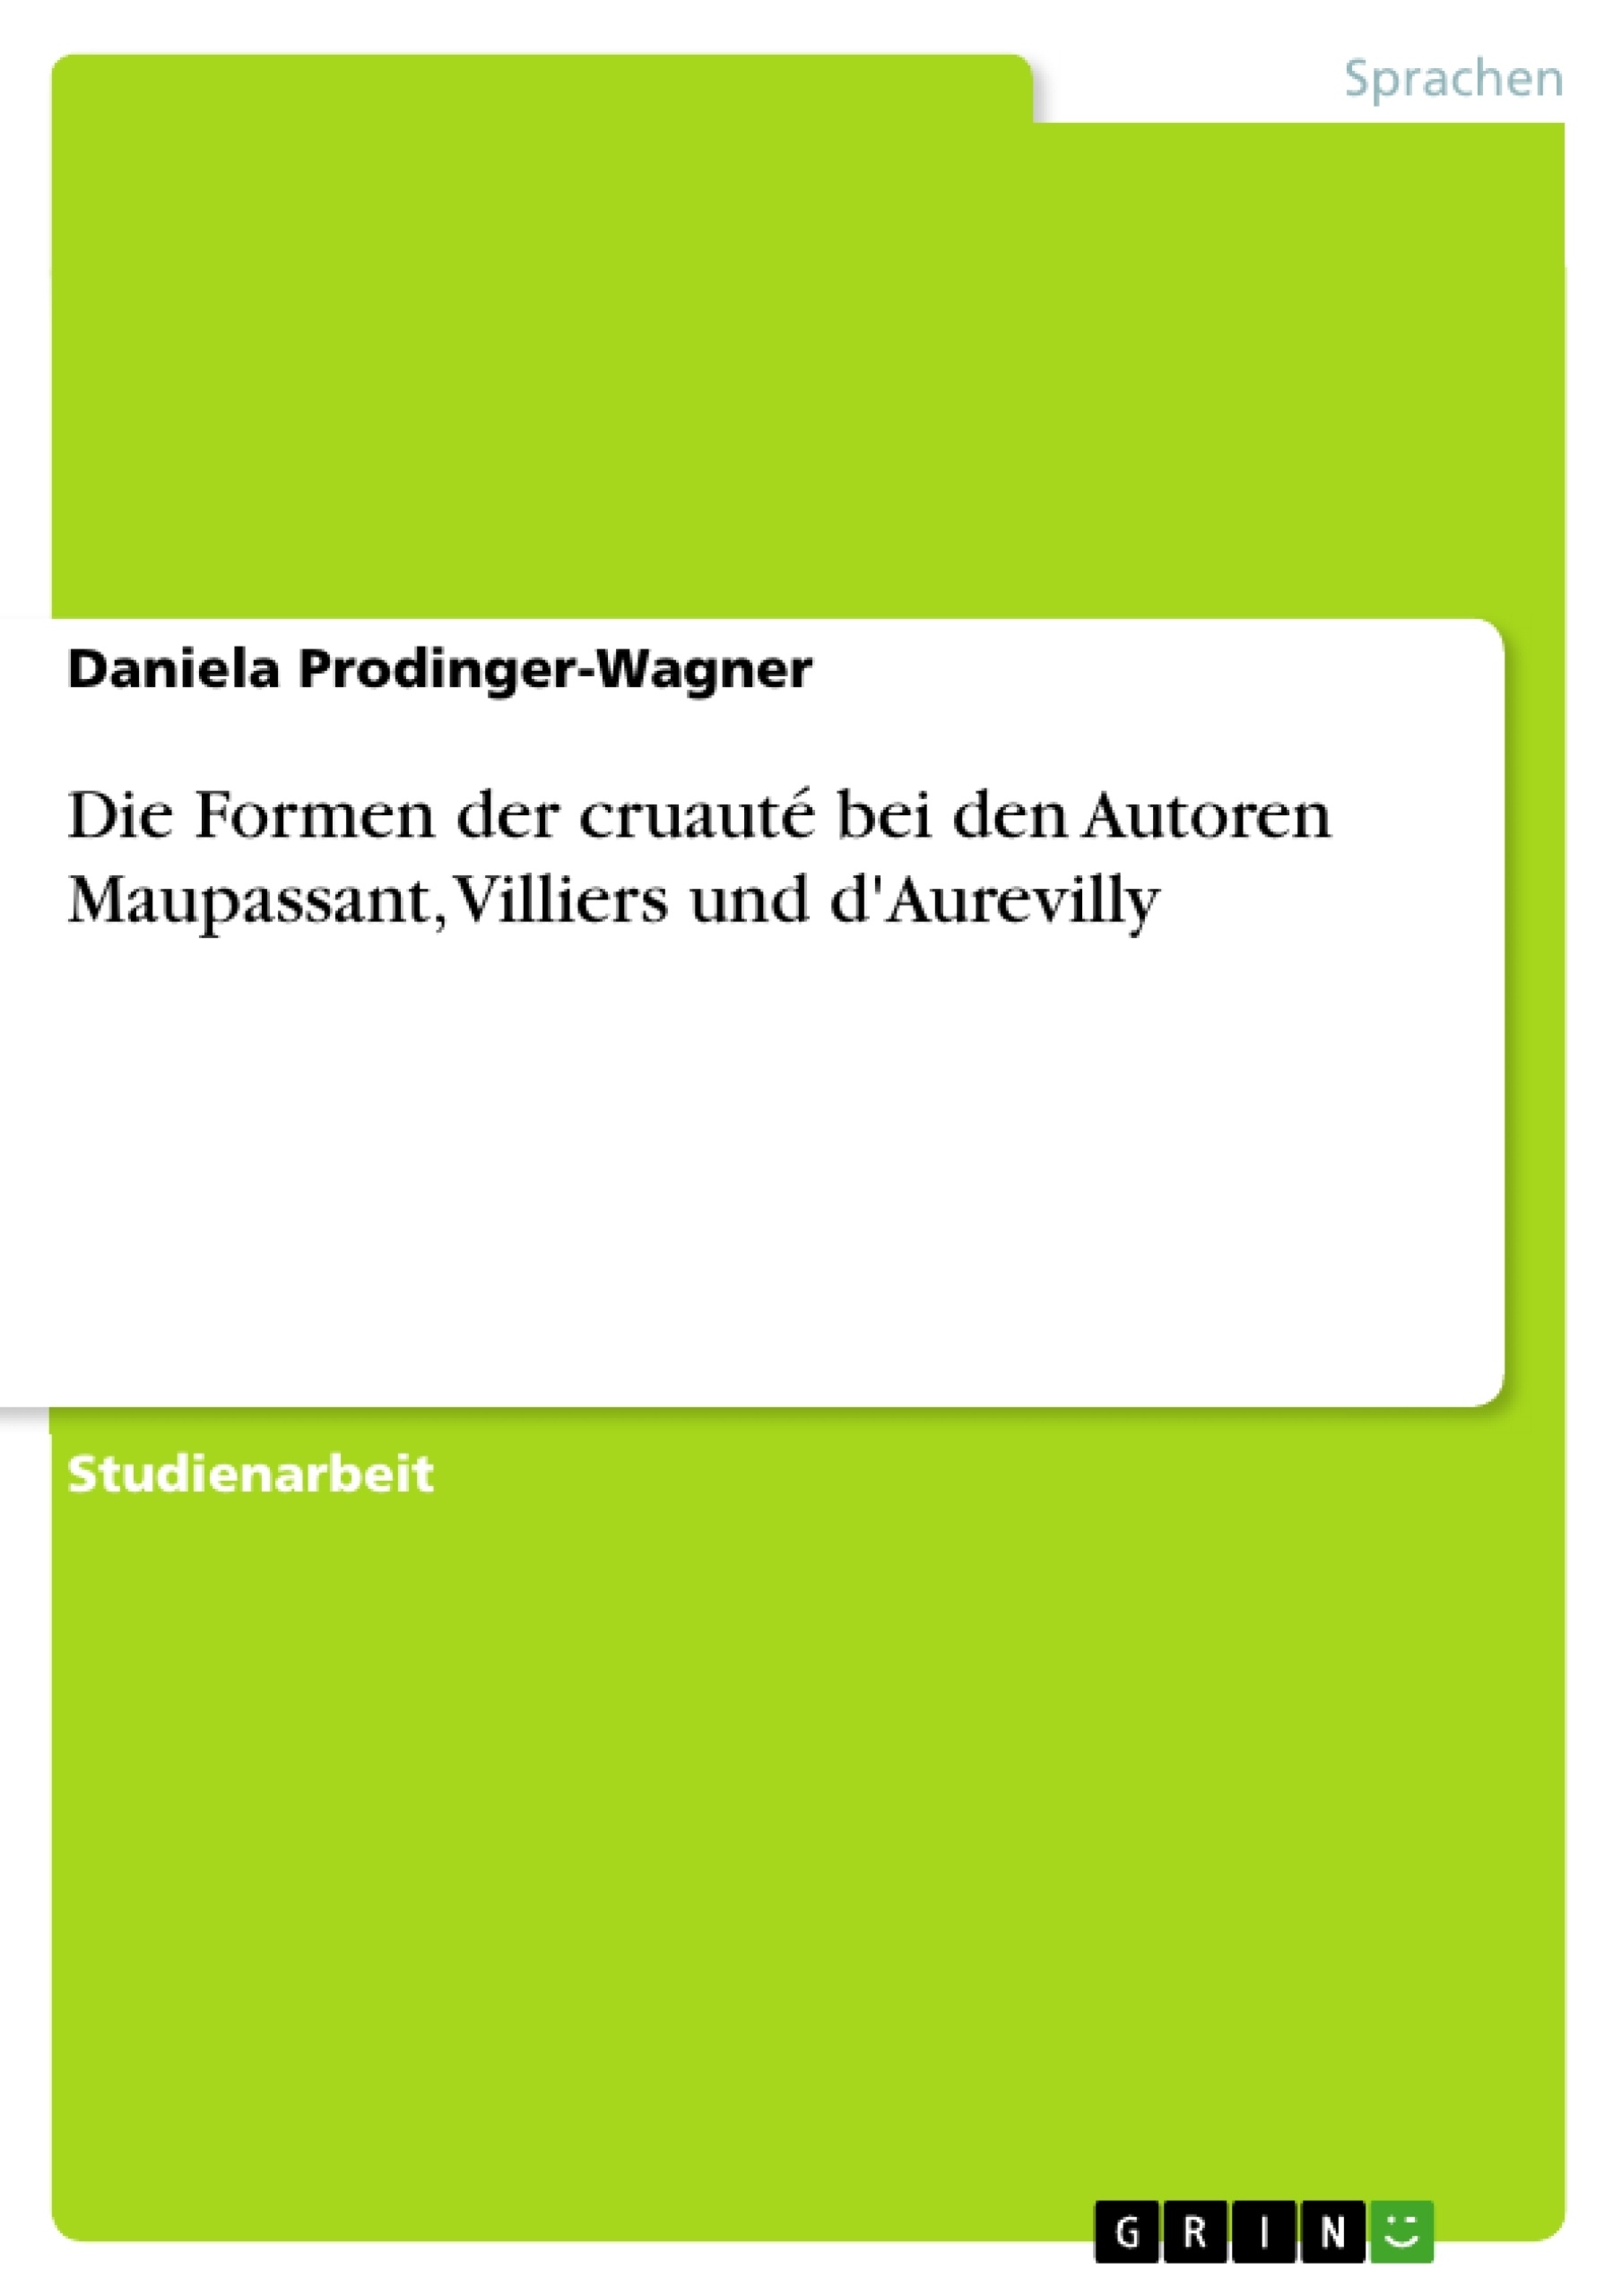 Título: Die Formen der cruauté bei den Autoren Maupassant, Villiers und d'Aurevilly